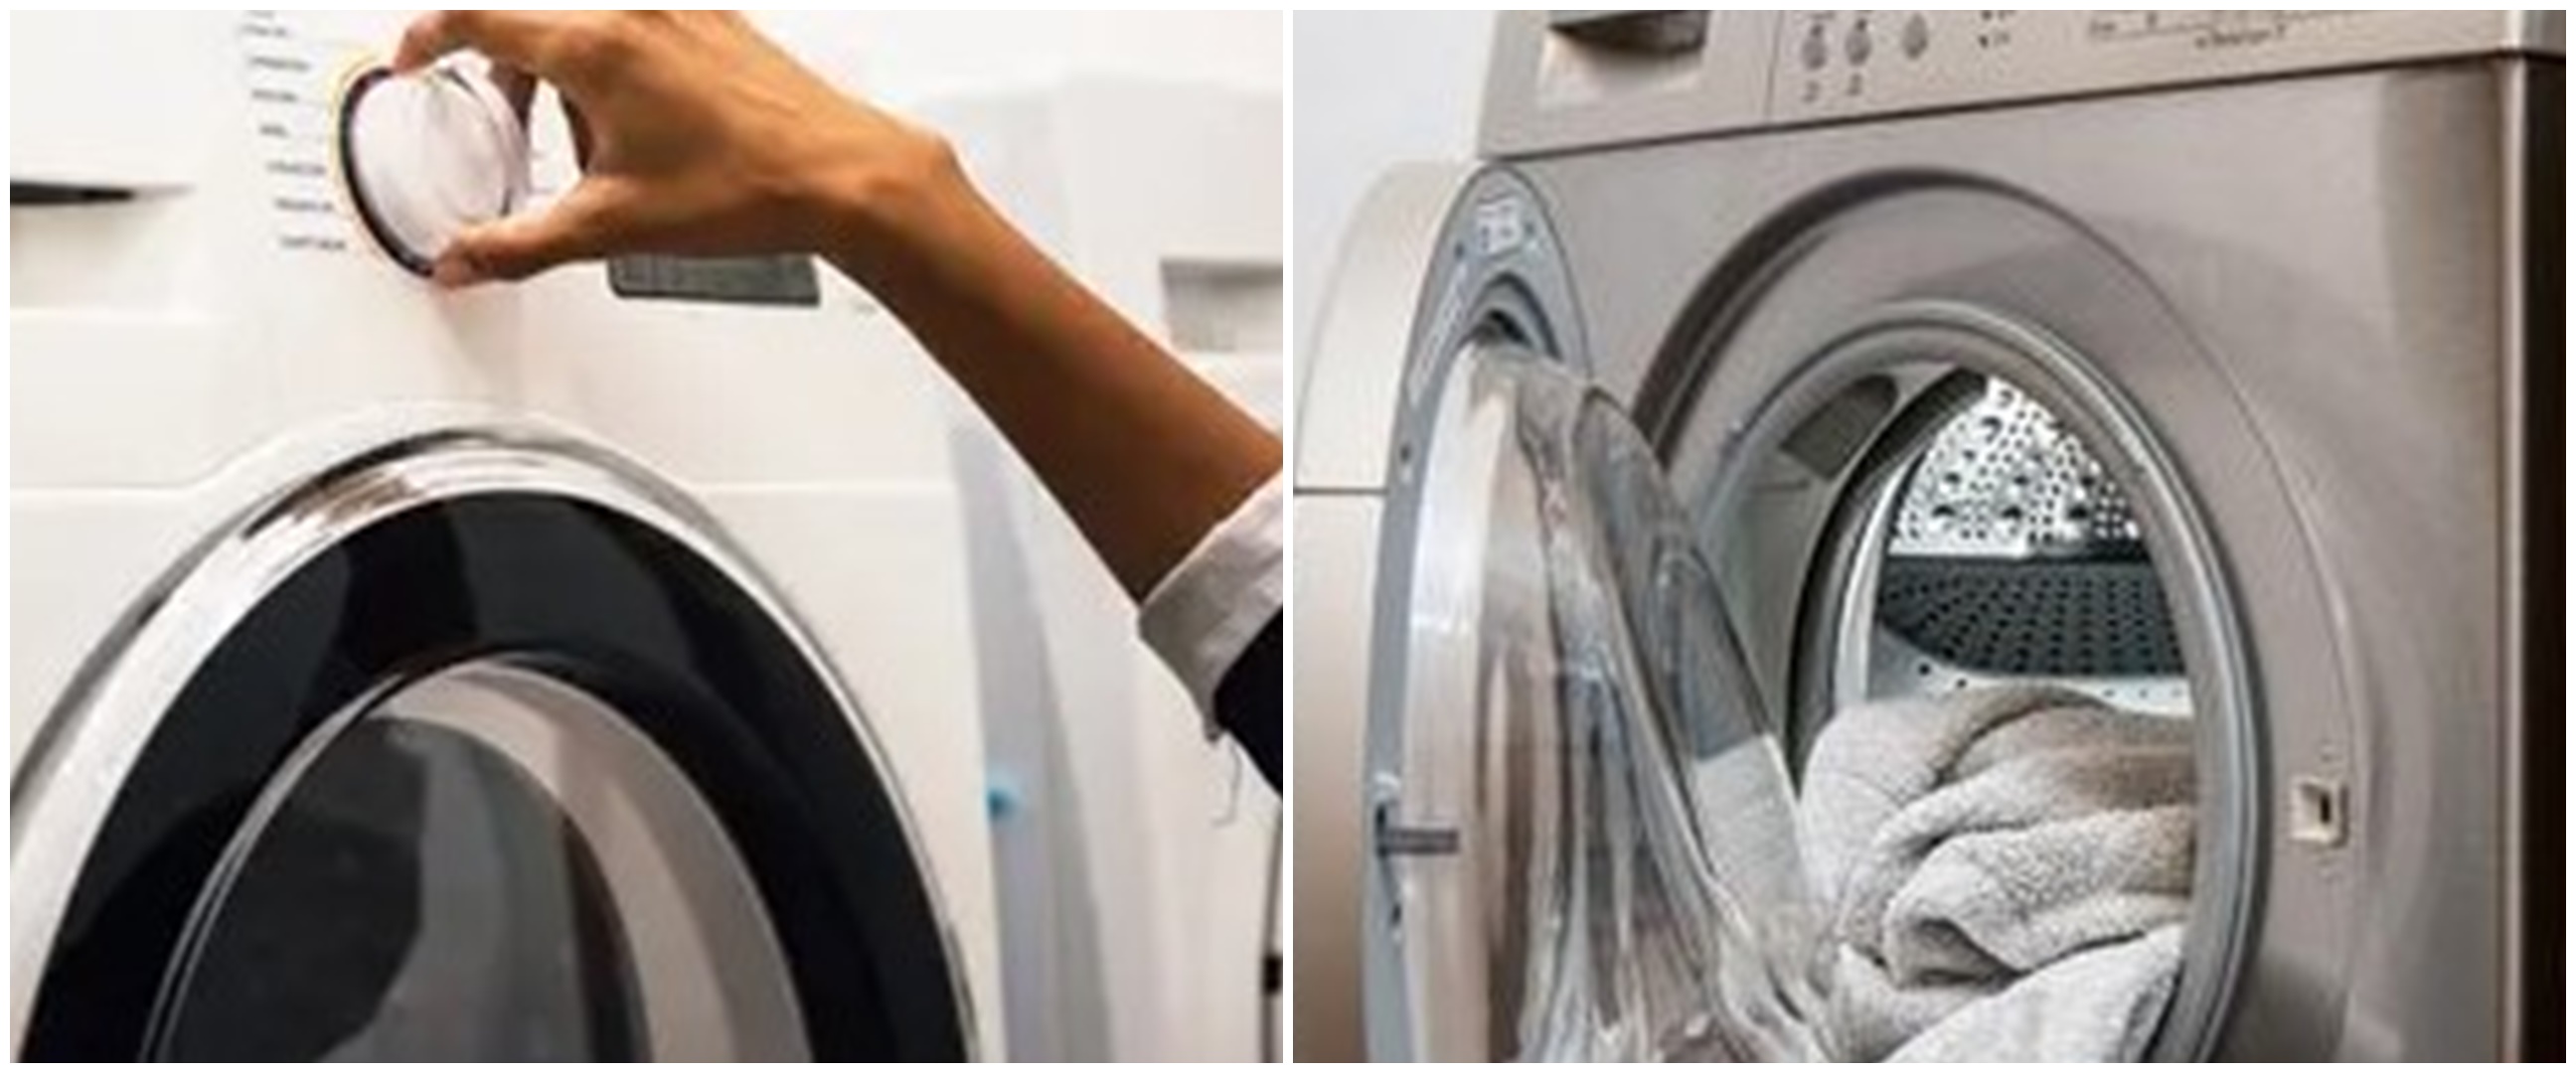 5 Cara mencuci pakaian pasien Covid-19 isoman di rumah menurut WHO